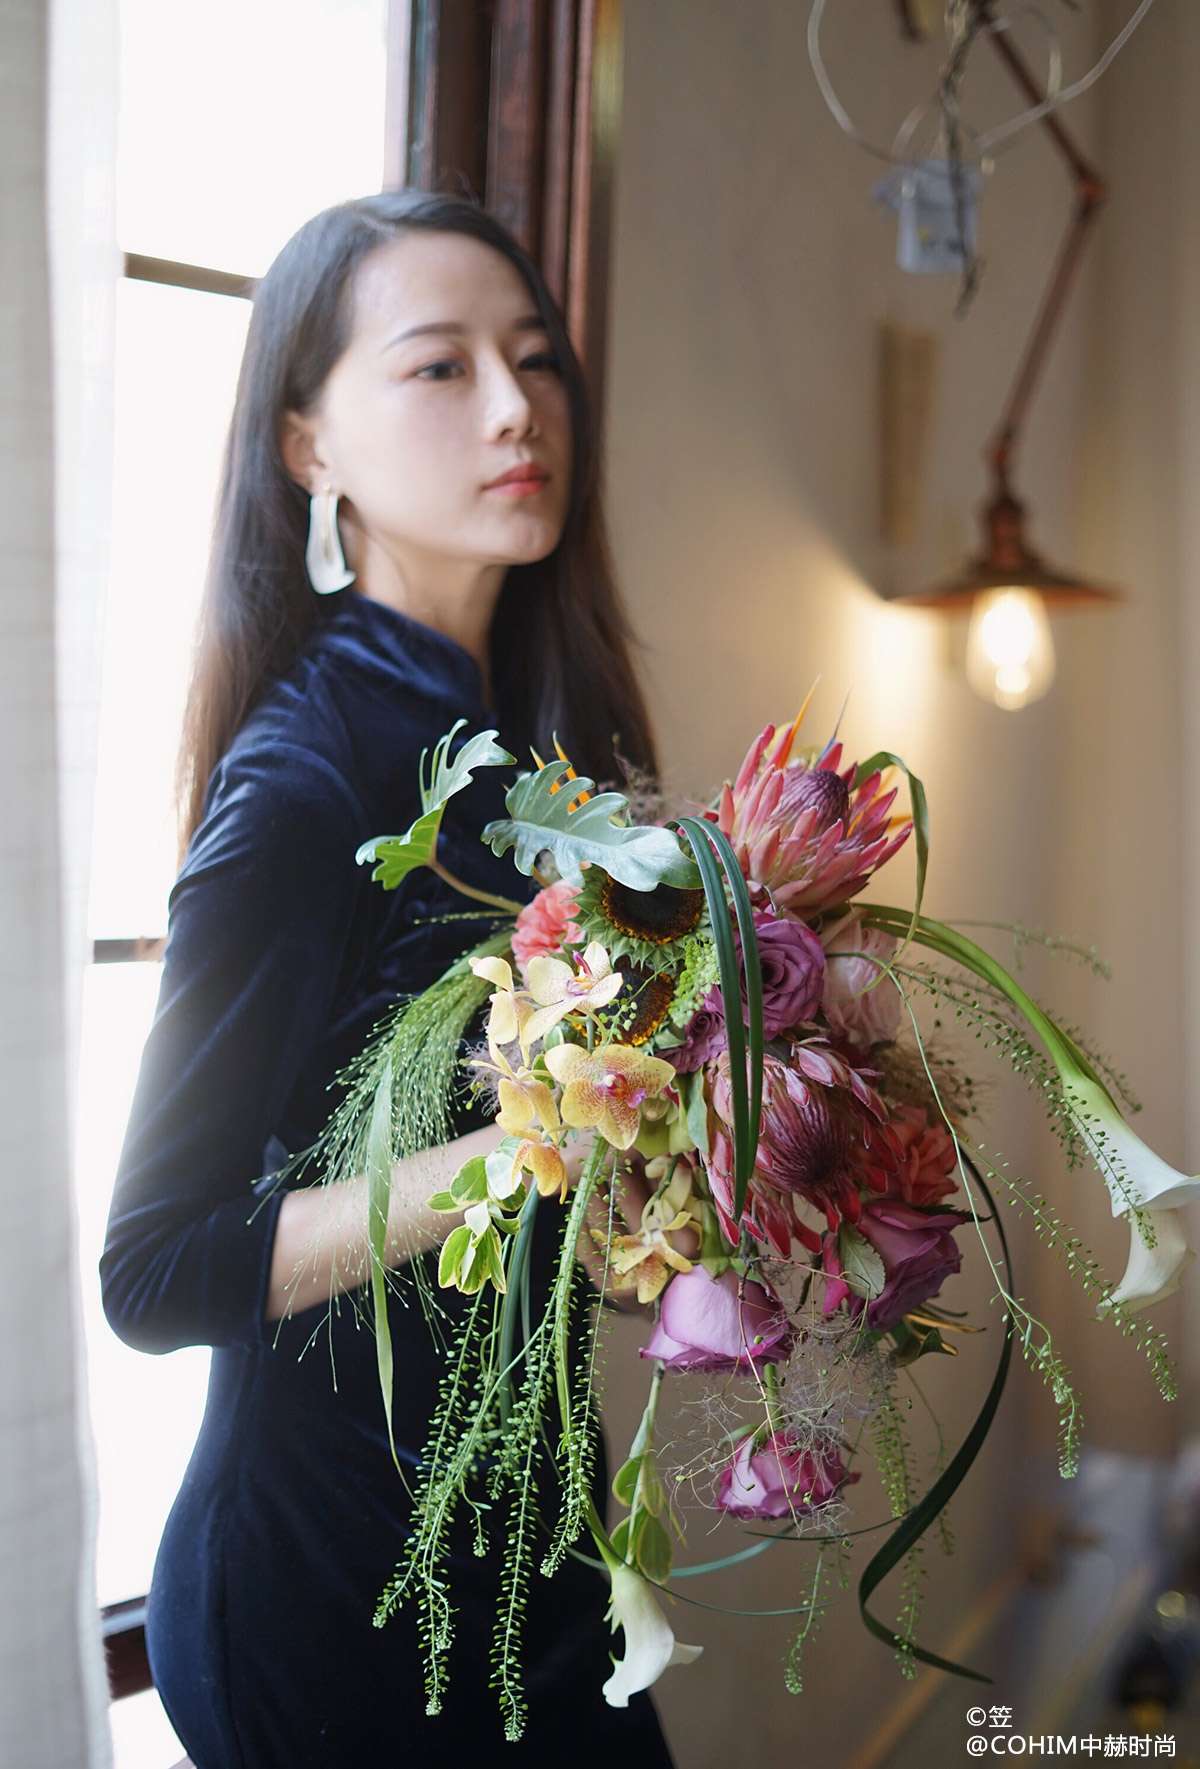 当做花束无法满足时 她重新定义了花艺 先锋花艺设计师王紫 知乎